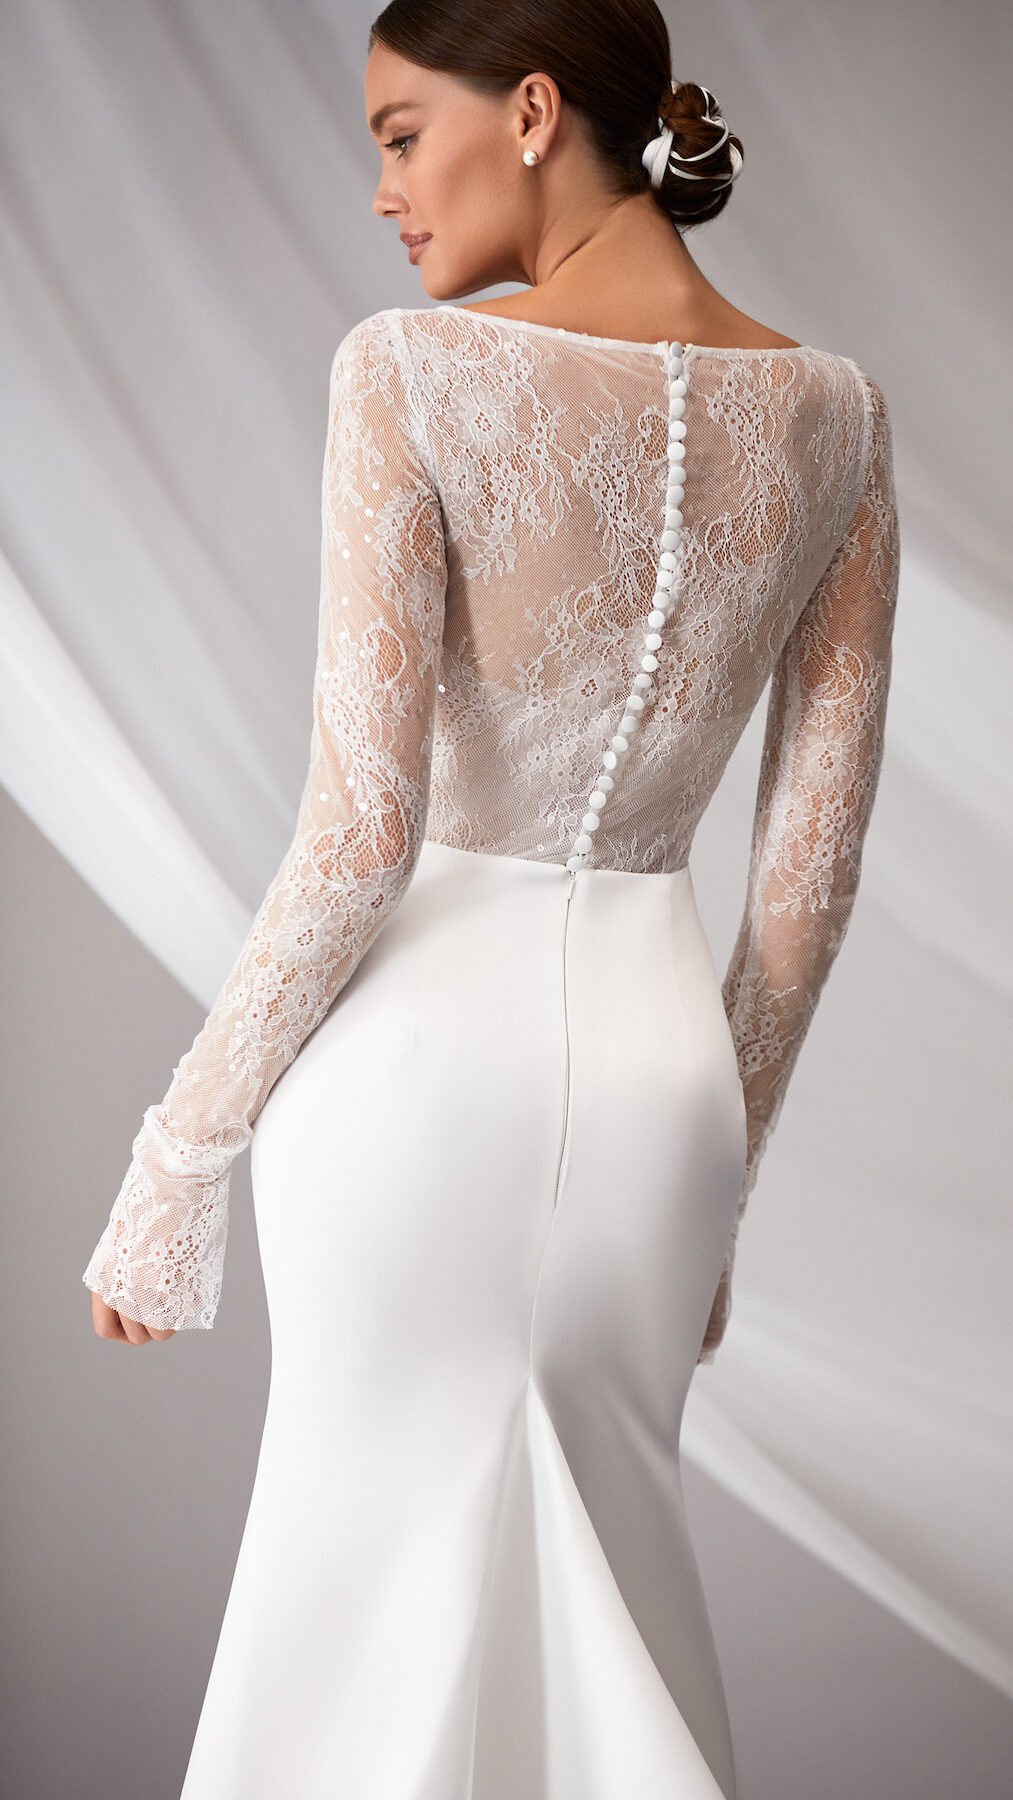 Lace Wedding Dress by Milla Nova - Diabla White Lace